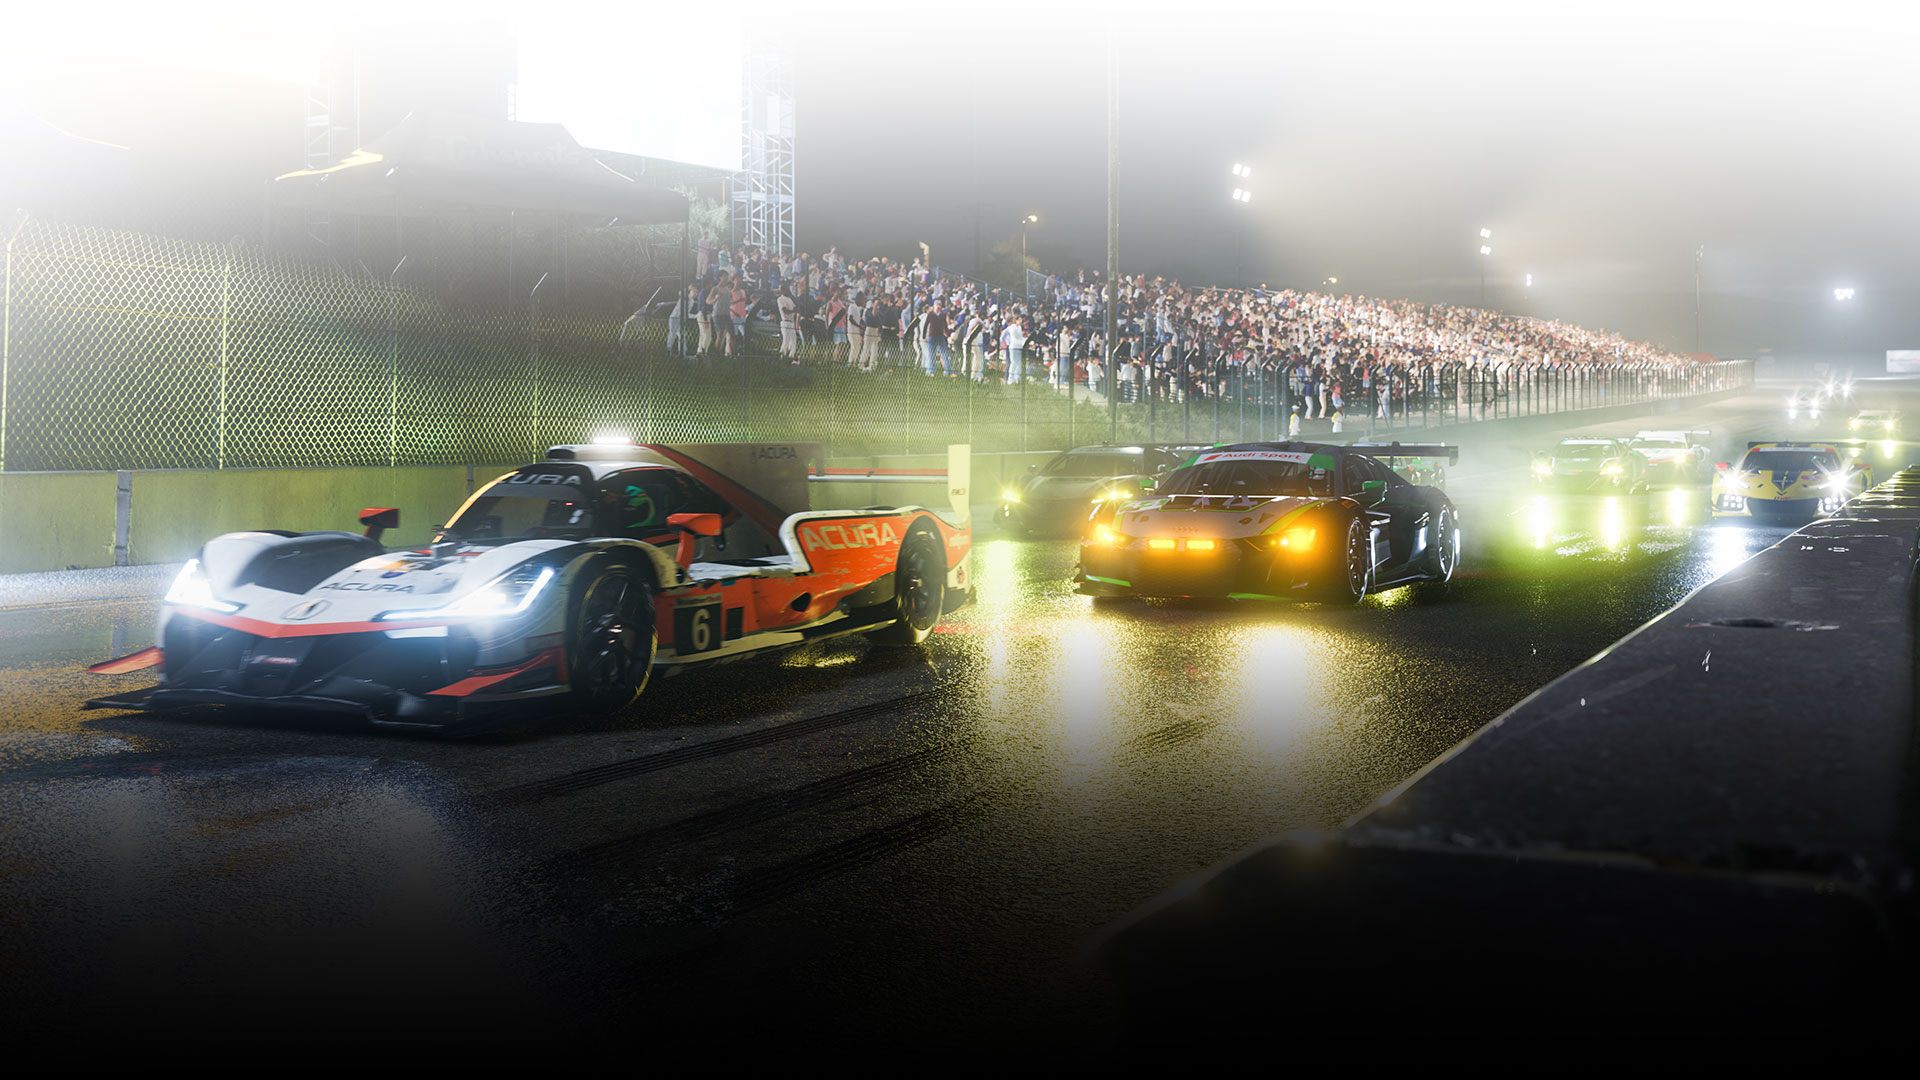 Les voitures de course s’alignent sur un circuit humide la nuit.